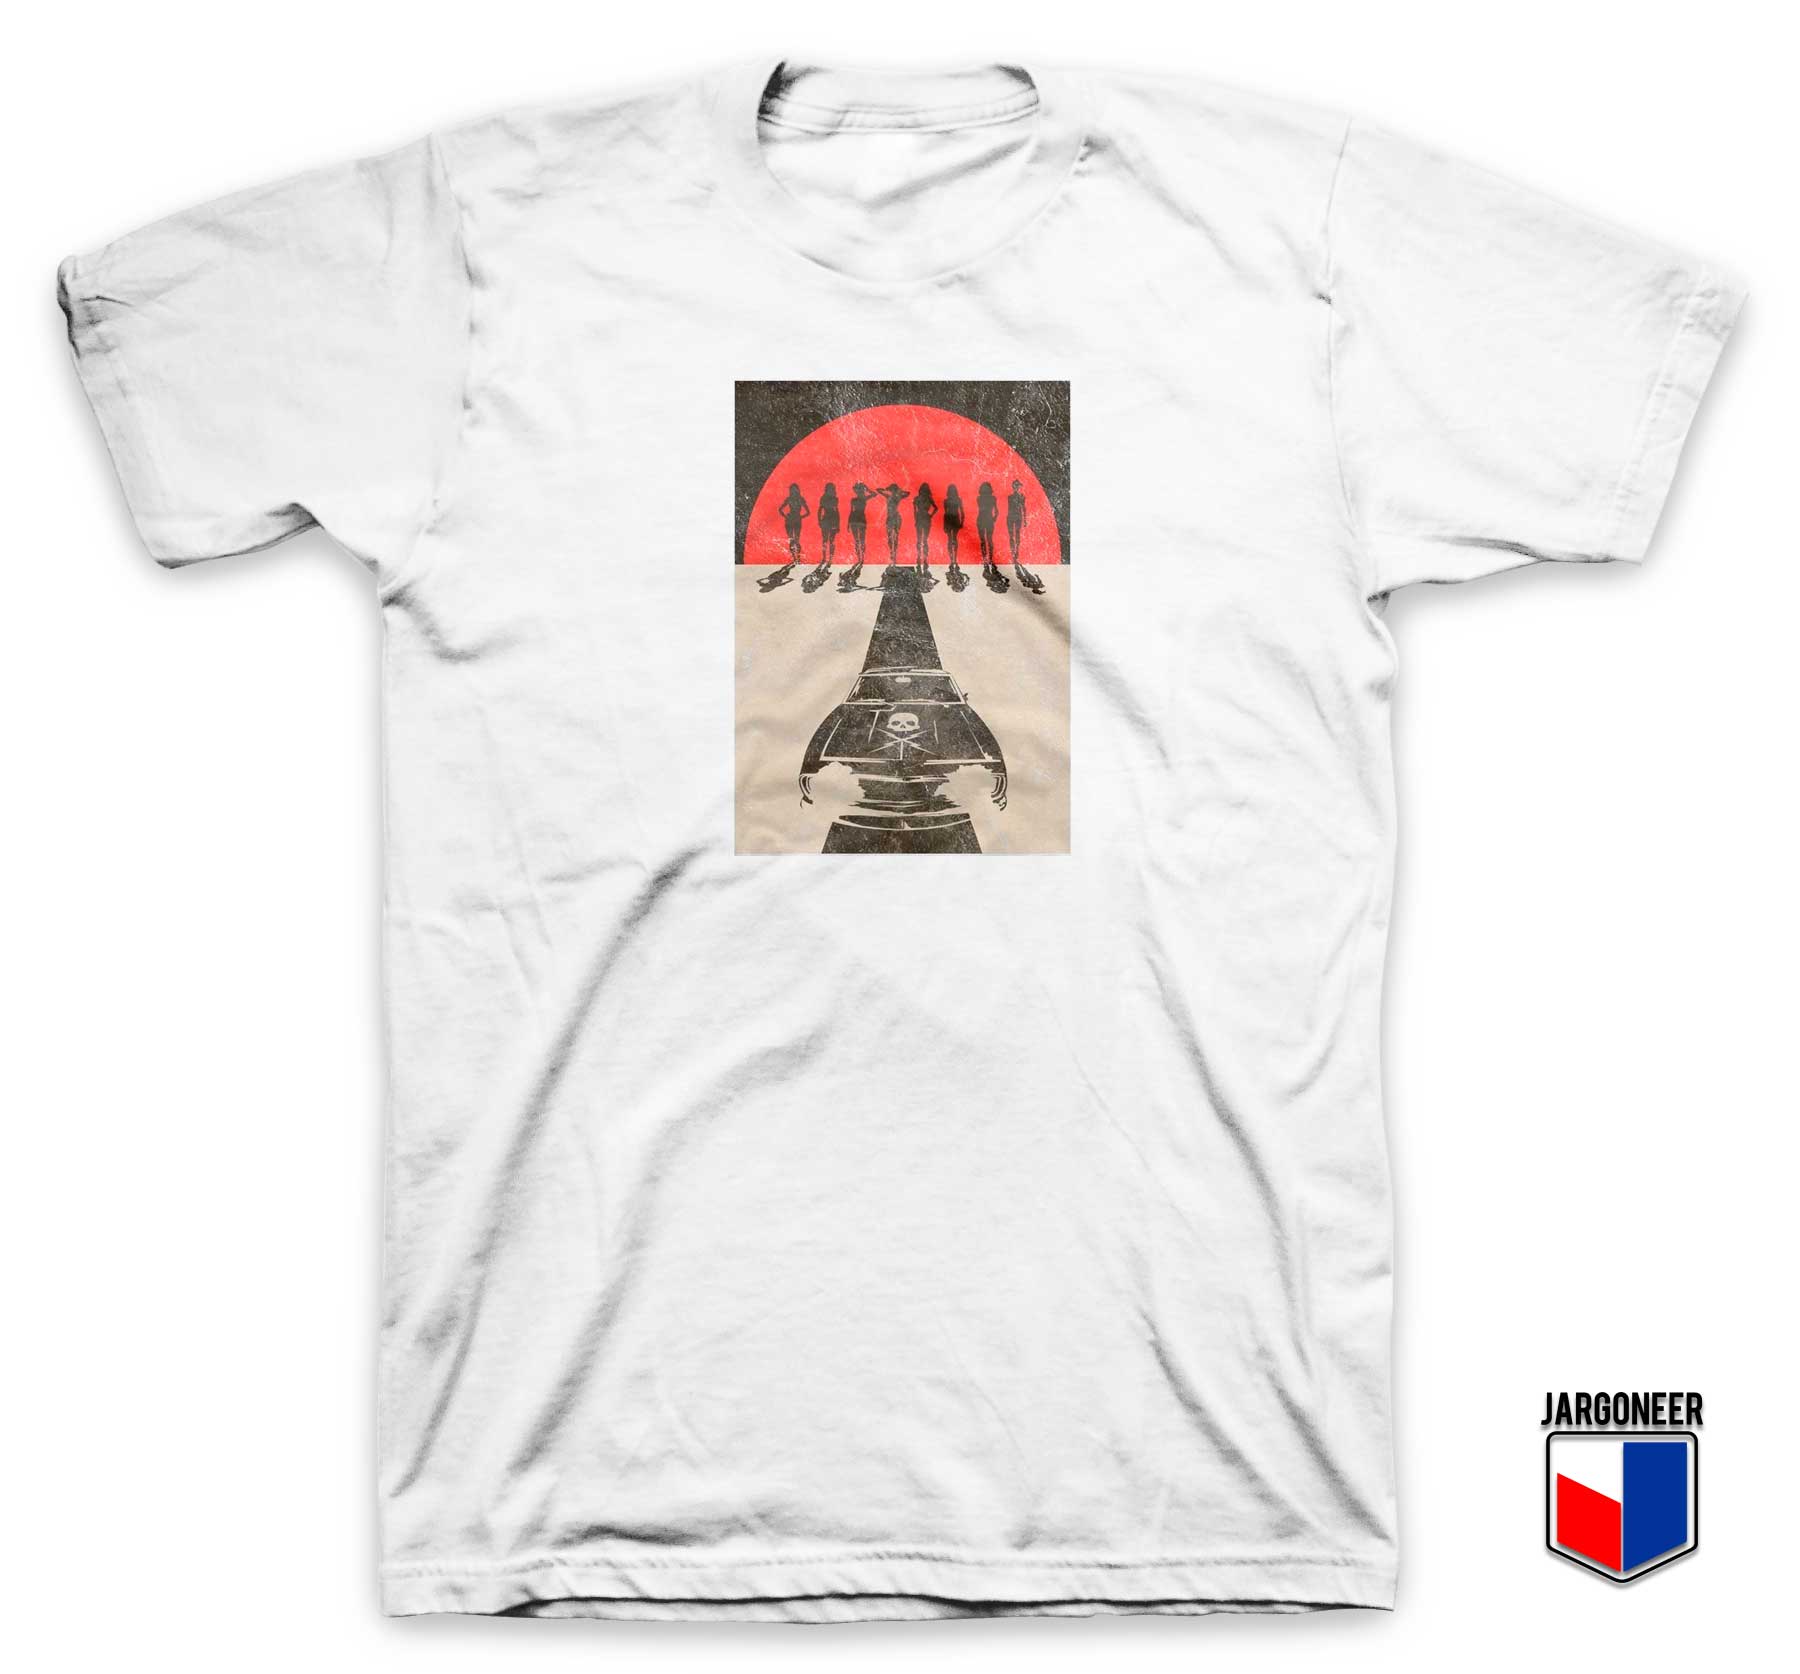 Death Proof Stuntman T Shirt - Shop Unique Graphic Cool Shirt Designs